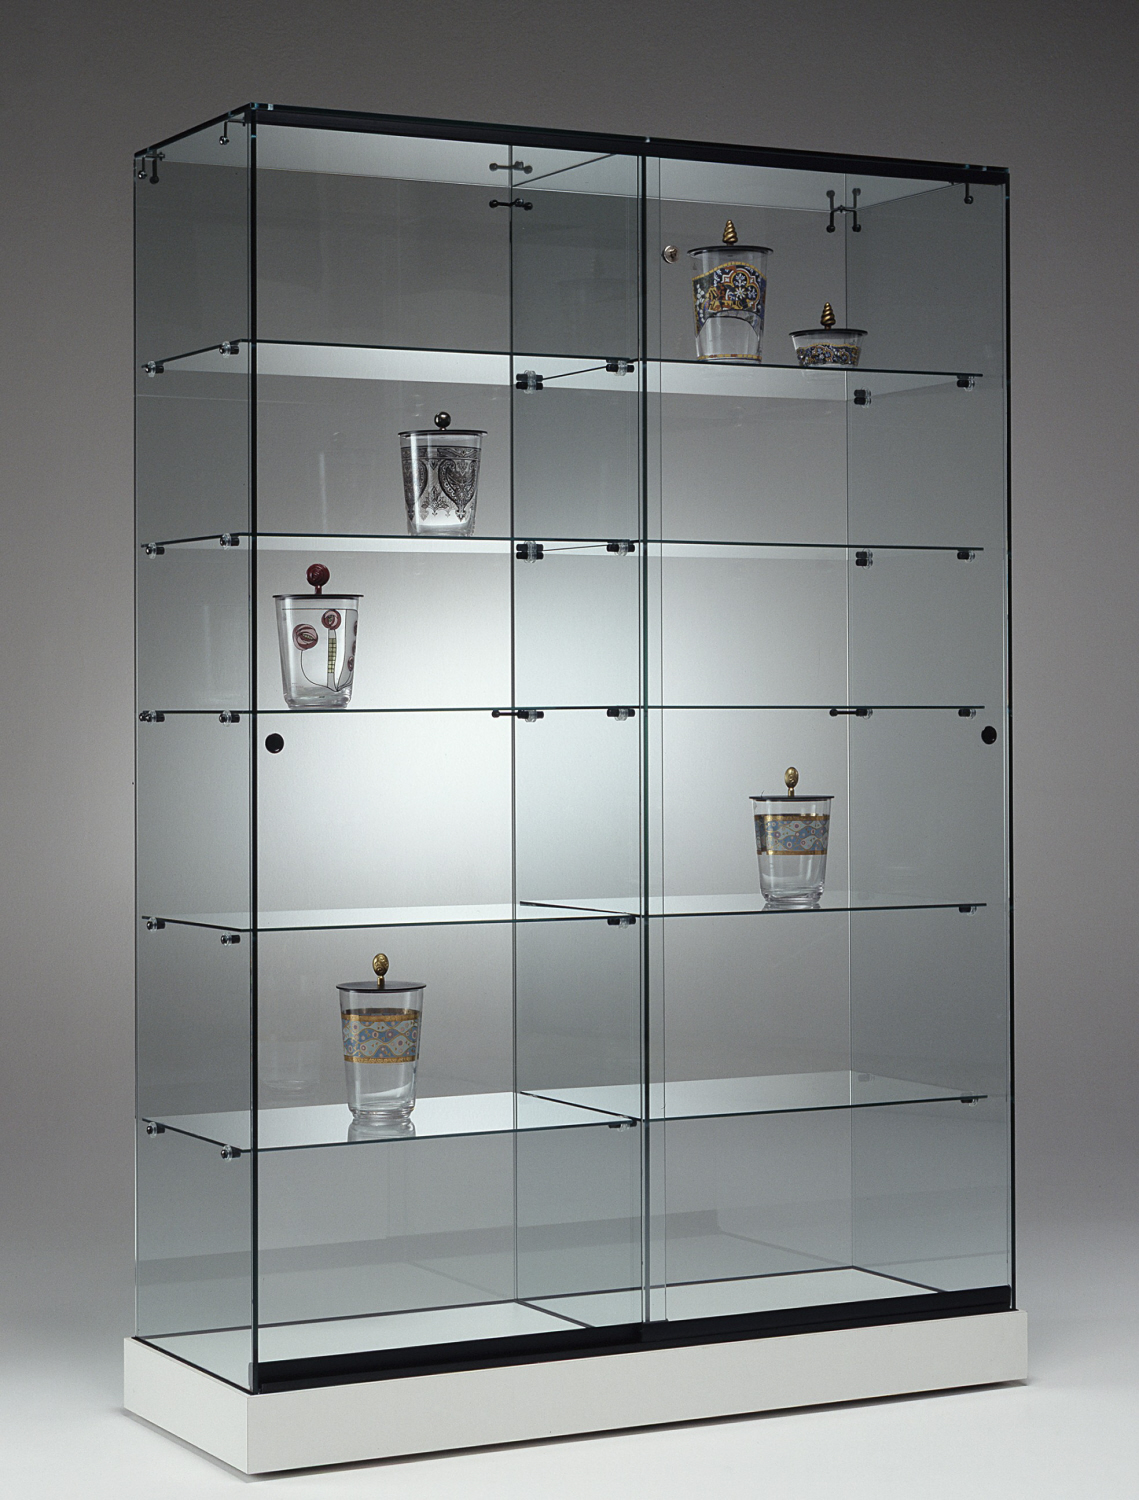 Витринные стеллажи. Витрина Glass Showcase h 1800. Showcase с335 витрина. Шкаф витрина металл стекло б2.